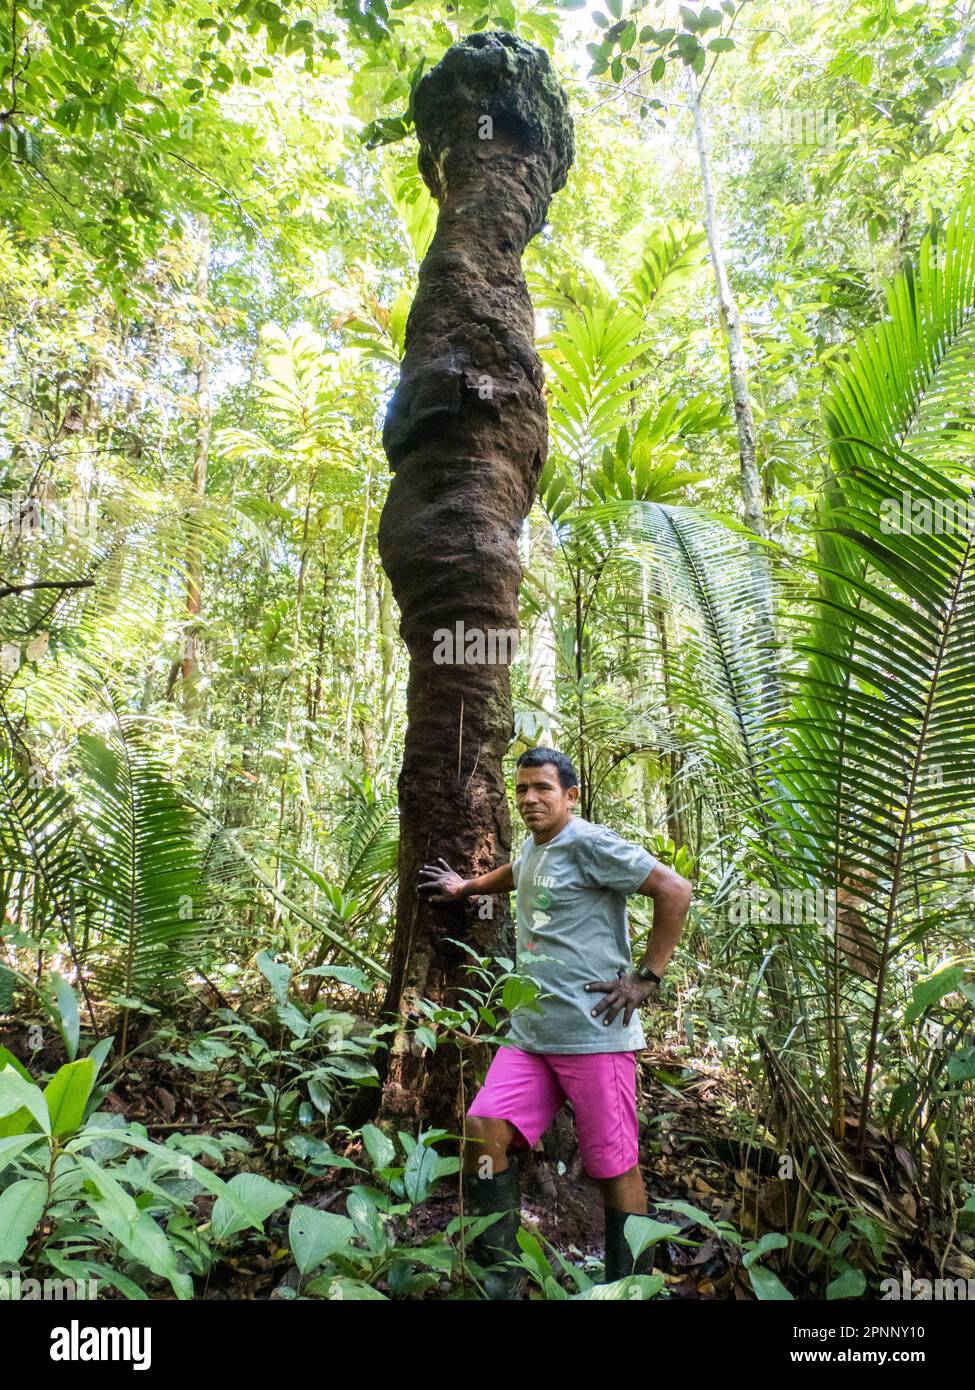 Palmari, Brésil- Nov, 2019: Homme brésilien à côté d'un énorme termite dans la forêt amazonienne. Amazonie, Brésil, Amérique du Sud. Banque D'Images